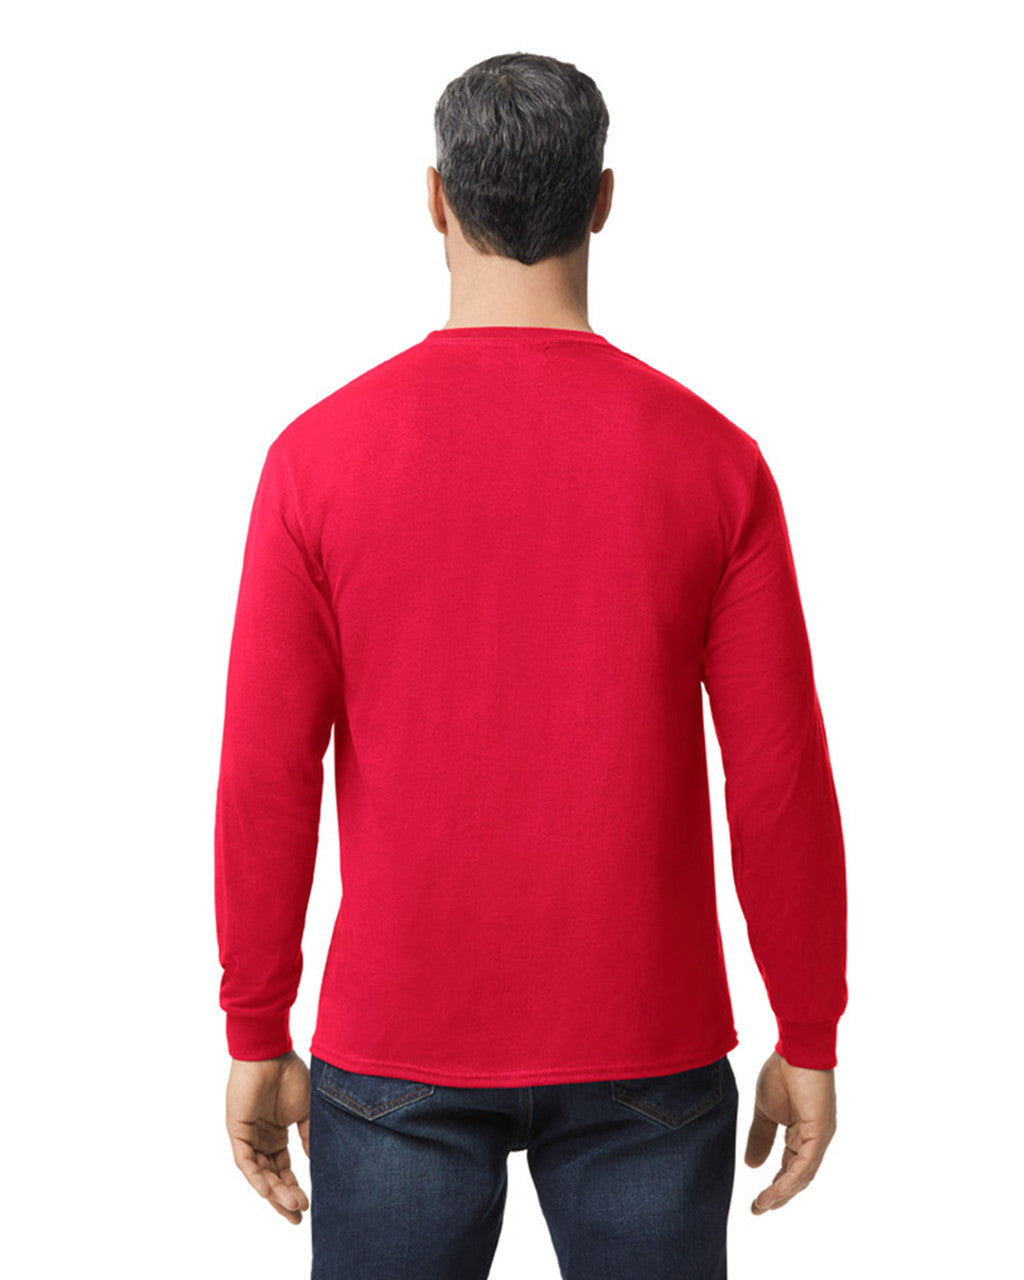 Camiseta Manga Larga Cuello Redondo Rojo Gildan Ref. 5400